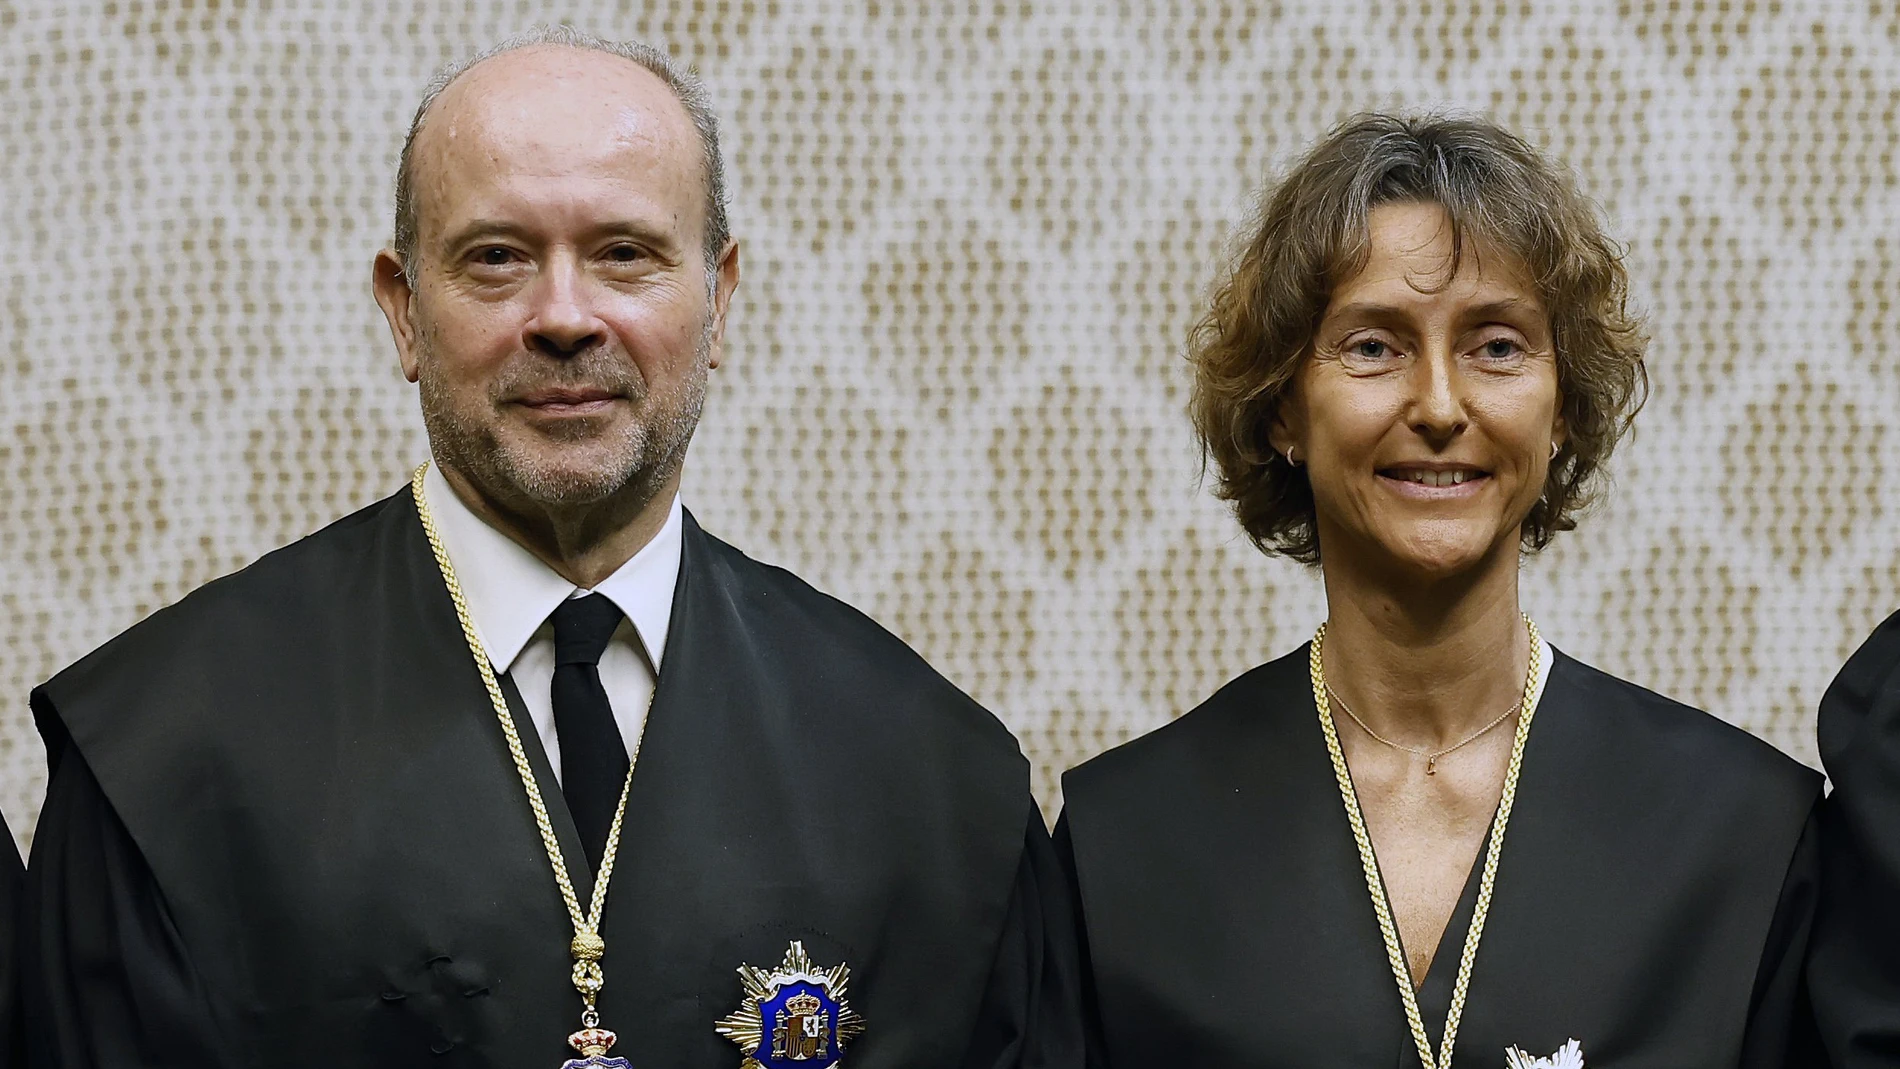  Juan Carlos Campo y Laura Díez durante su toma de posesión como nuevos magistrados del Tribunal Constitucional.